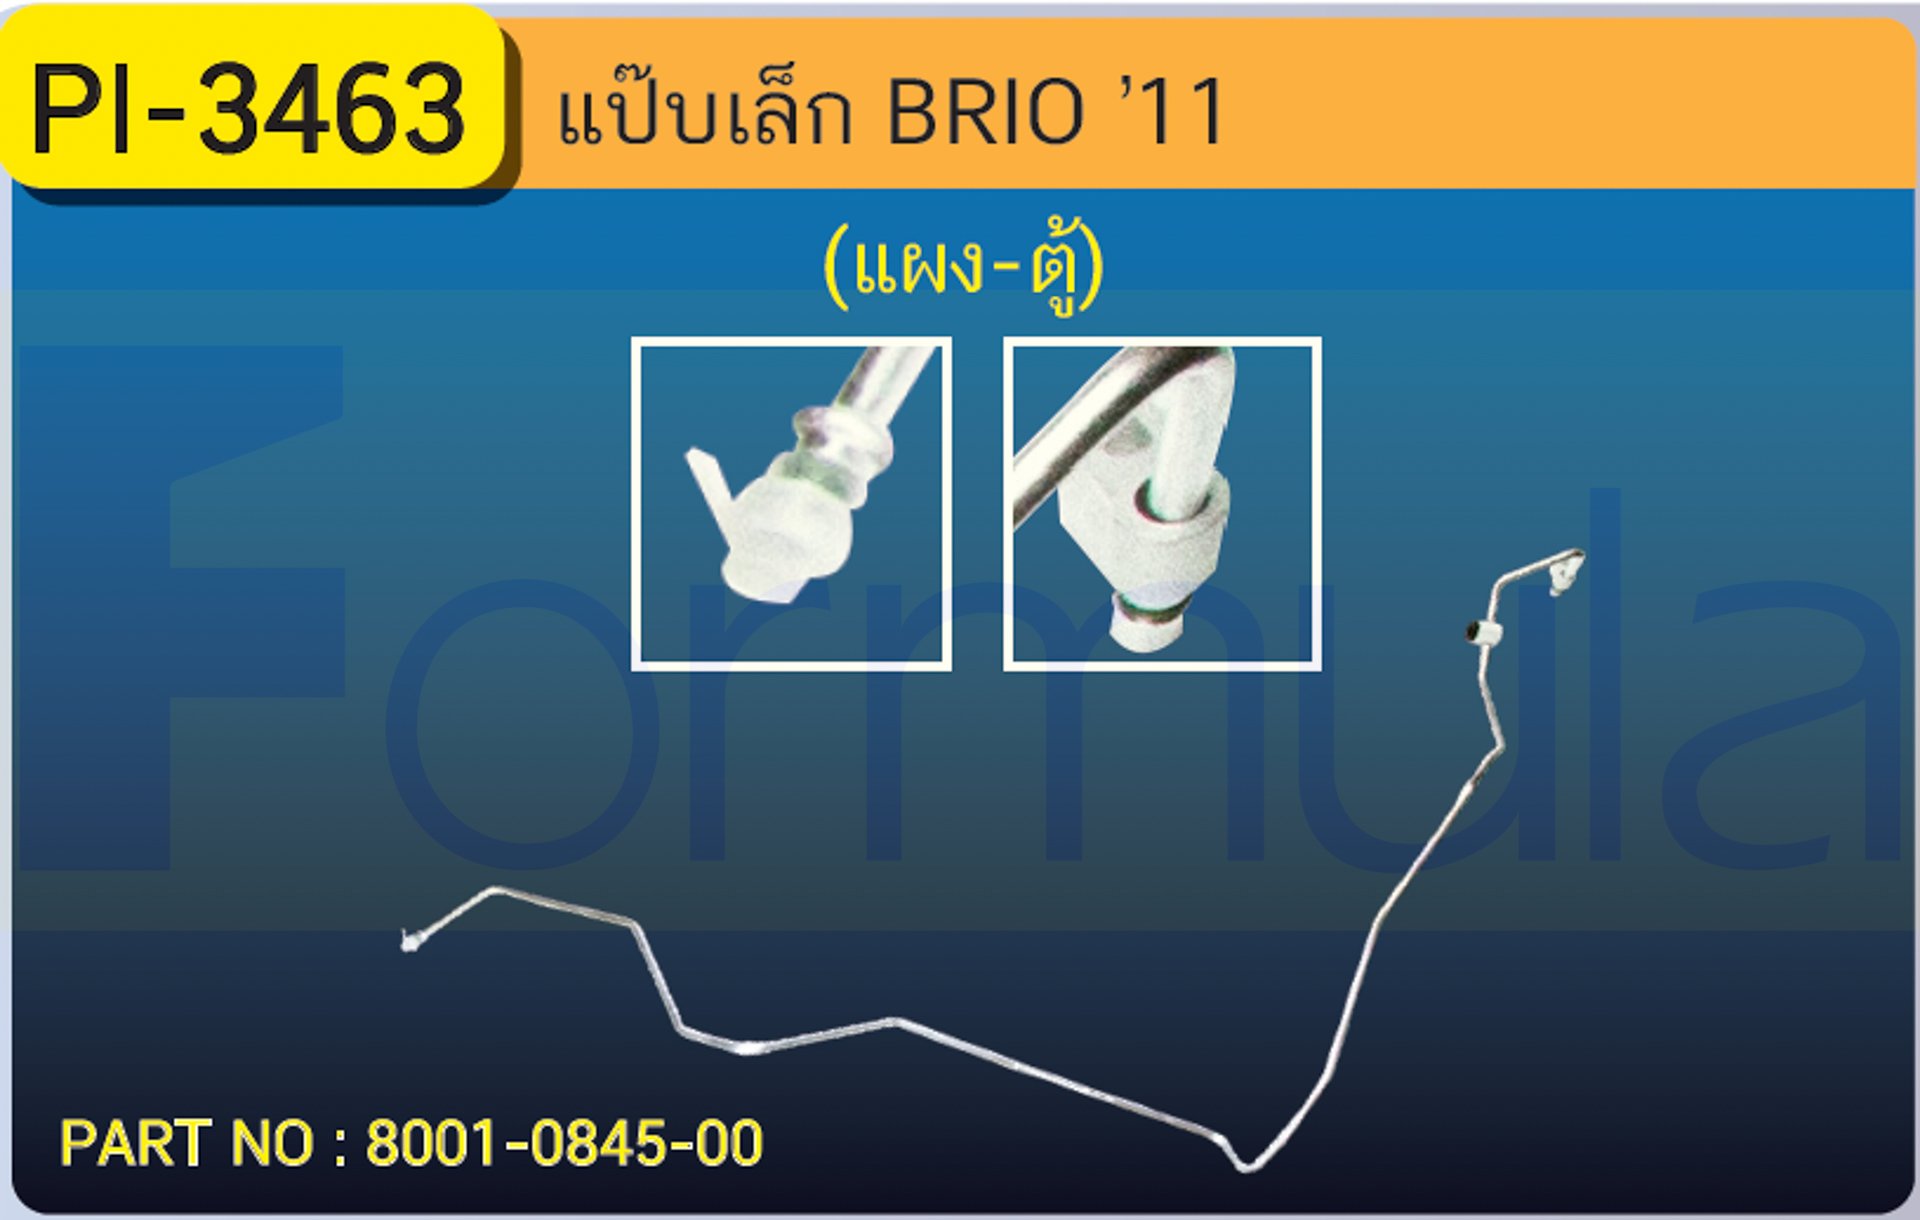 ALU. PIPE 8.0 mm. HONDA BRIO '11 (134a)(แผง-ตู้)